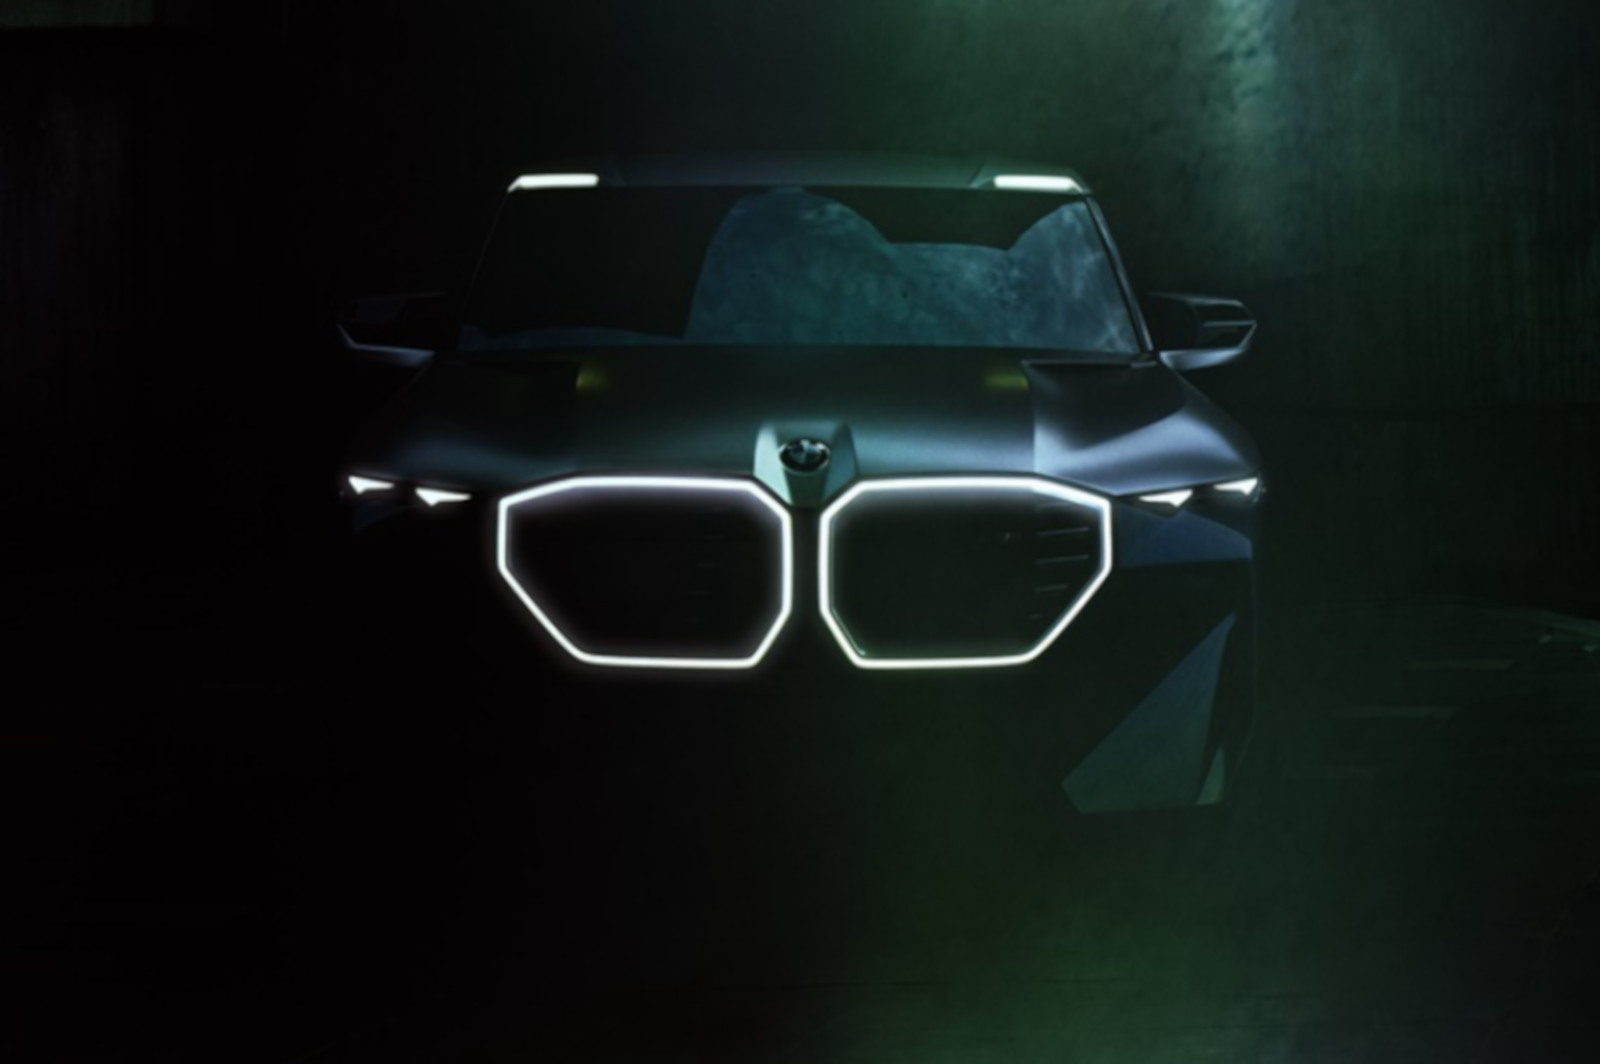 BMW XM: Offizieller Teaser zum M-Power-SUV mit 750-PS-Hybrid